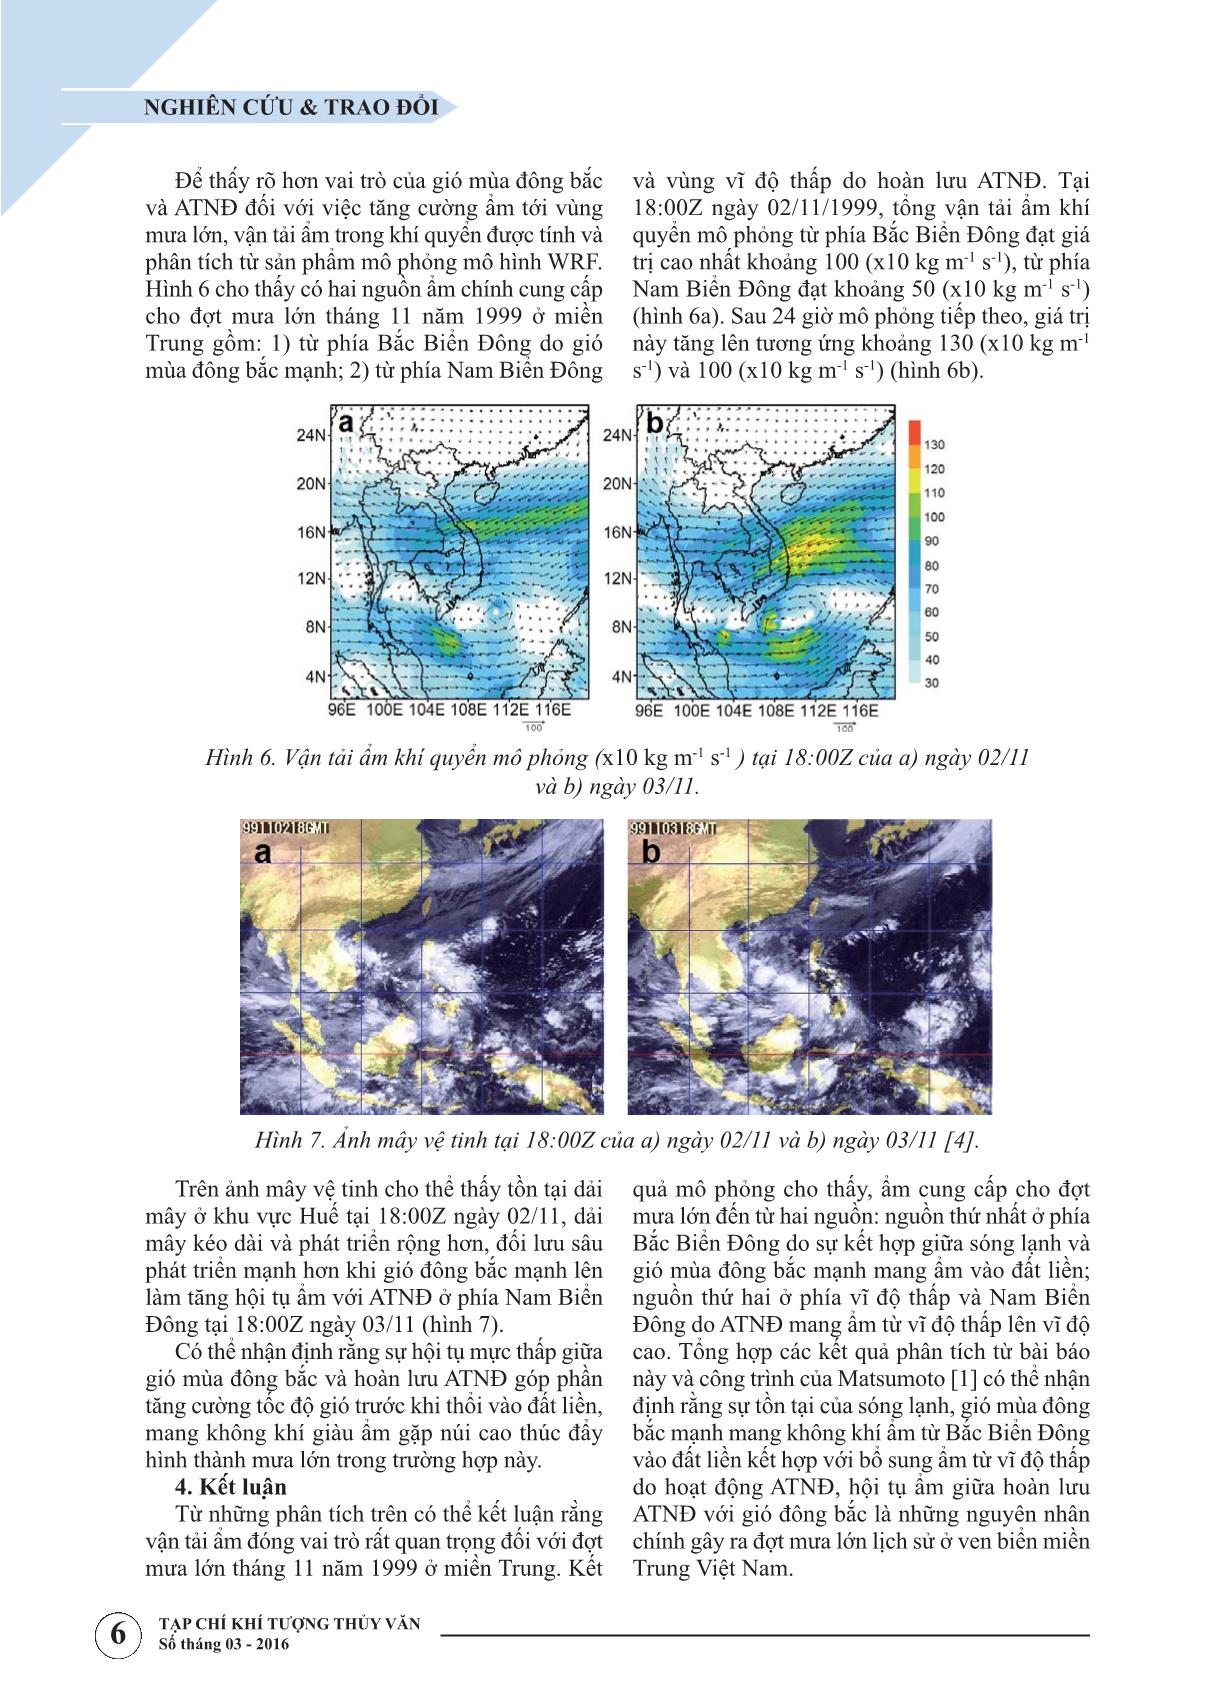 Nghiên cứu vai trò của vận tải ẩm trọng đợt mưa lớn tháng 11 năm 1999 ở miền Trung bằng mô hình WRF trang 4